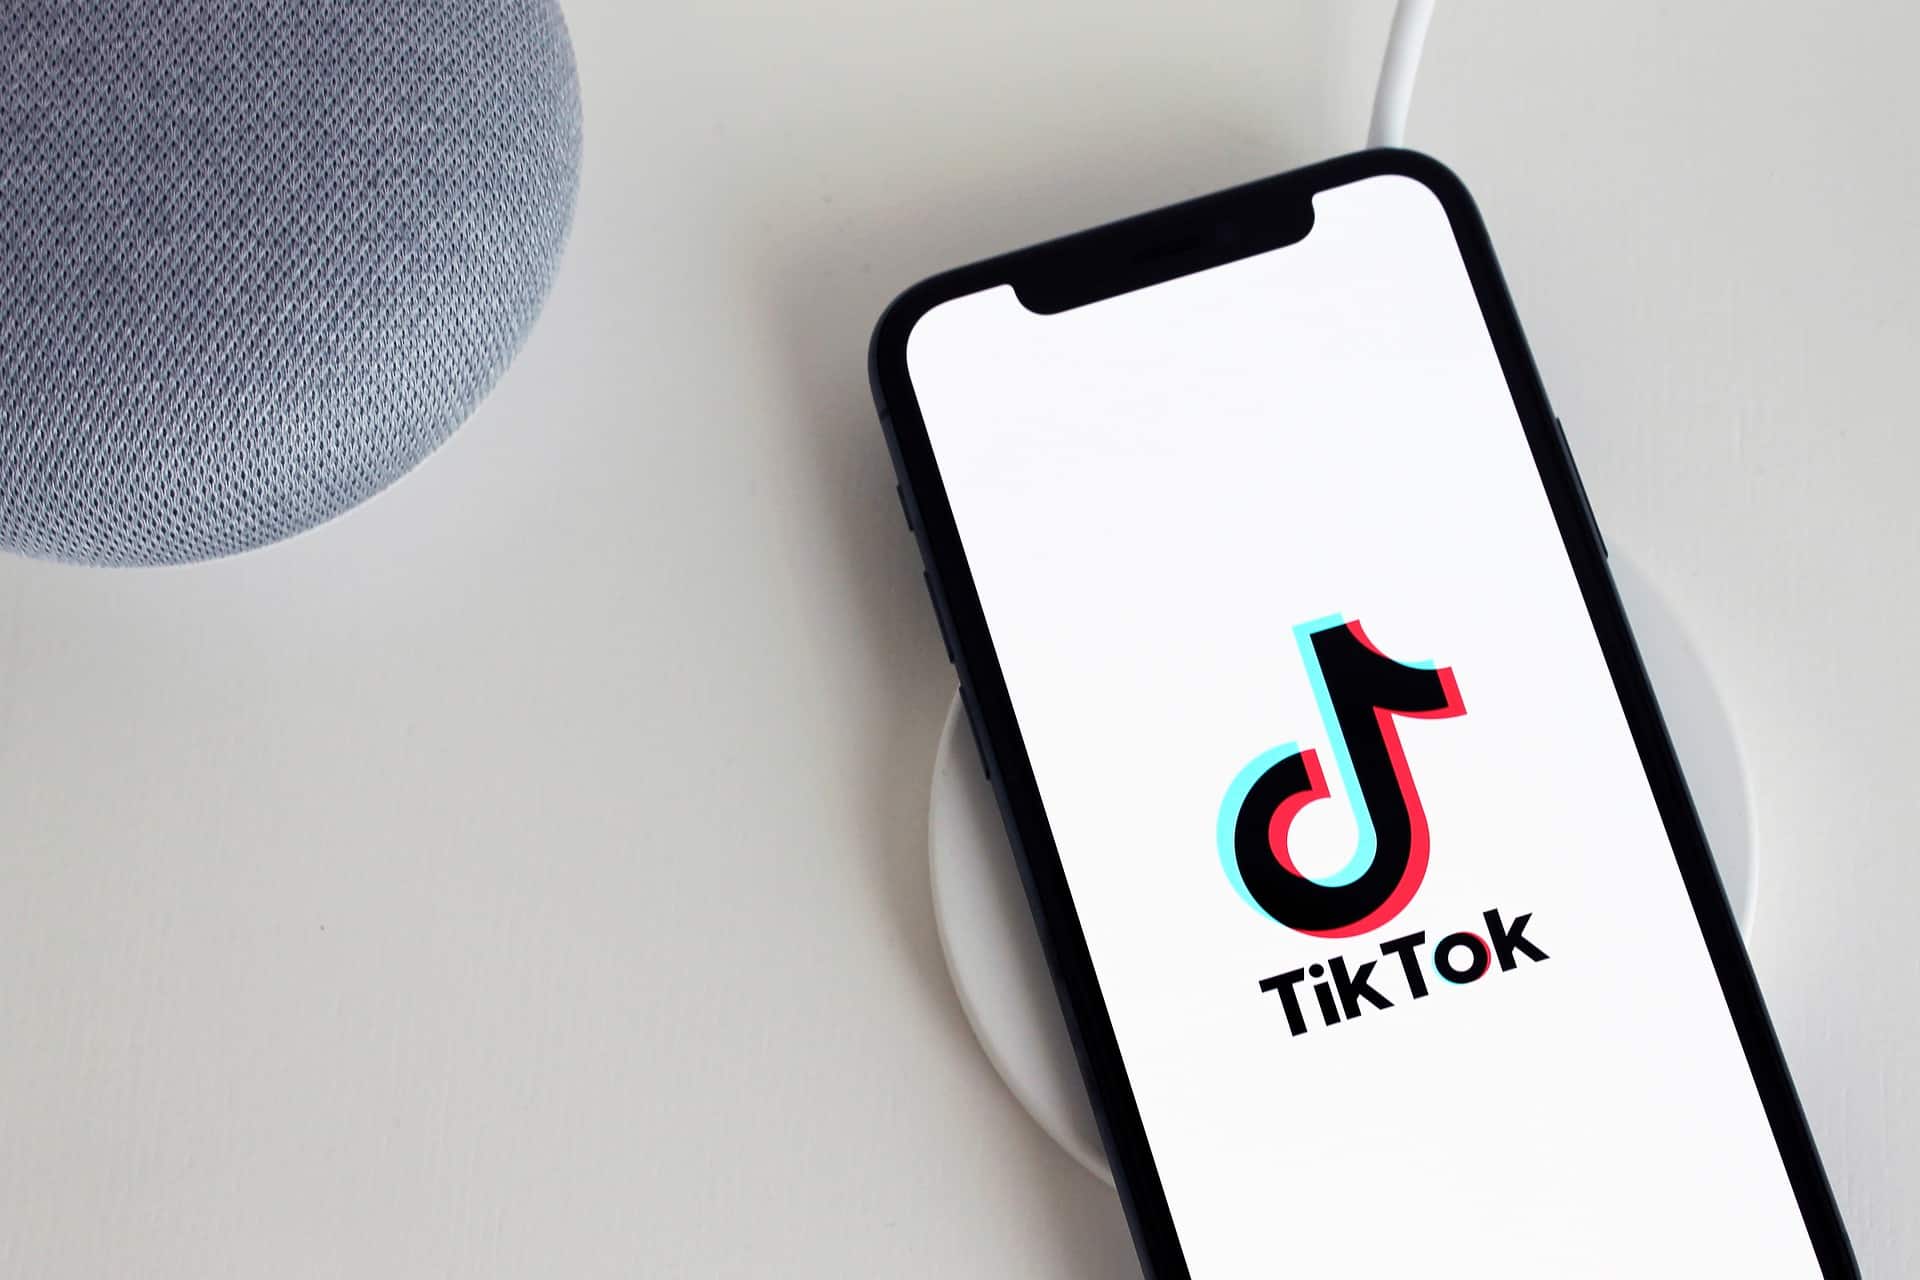 Am pus mâna pe varianta completă a celei mai virale melodii de pe TikTok! Cum sună piesa TakaTaka, integral. VIDEO hilar